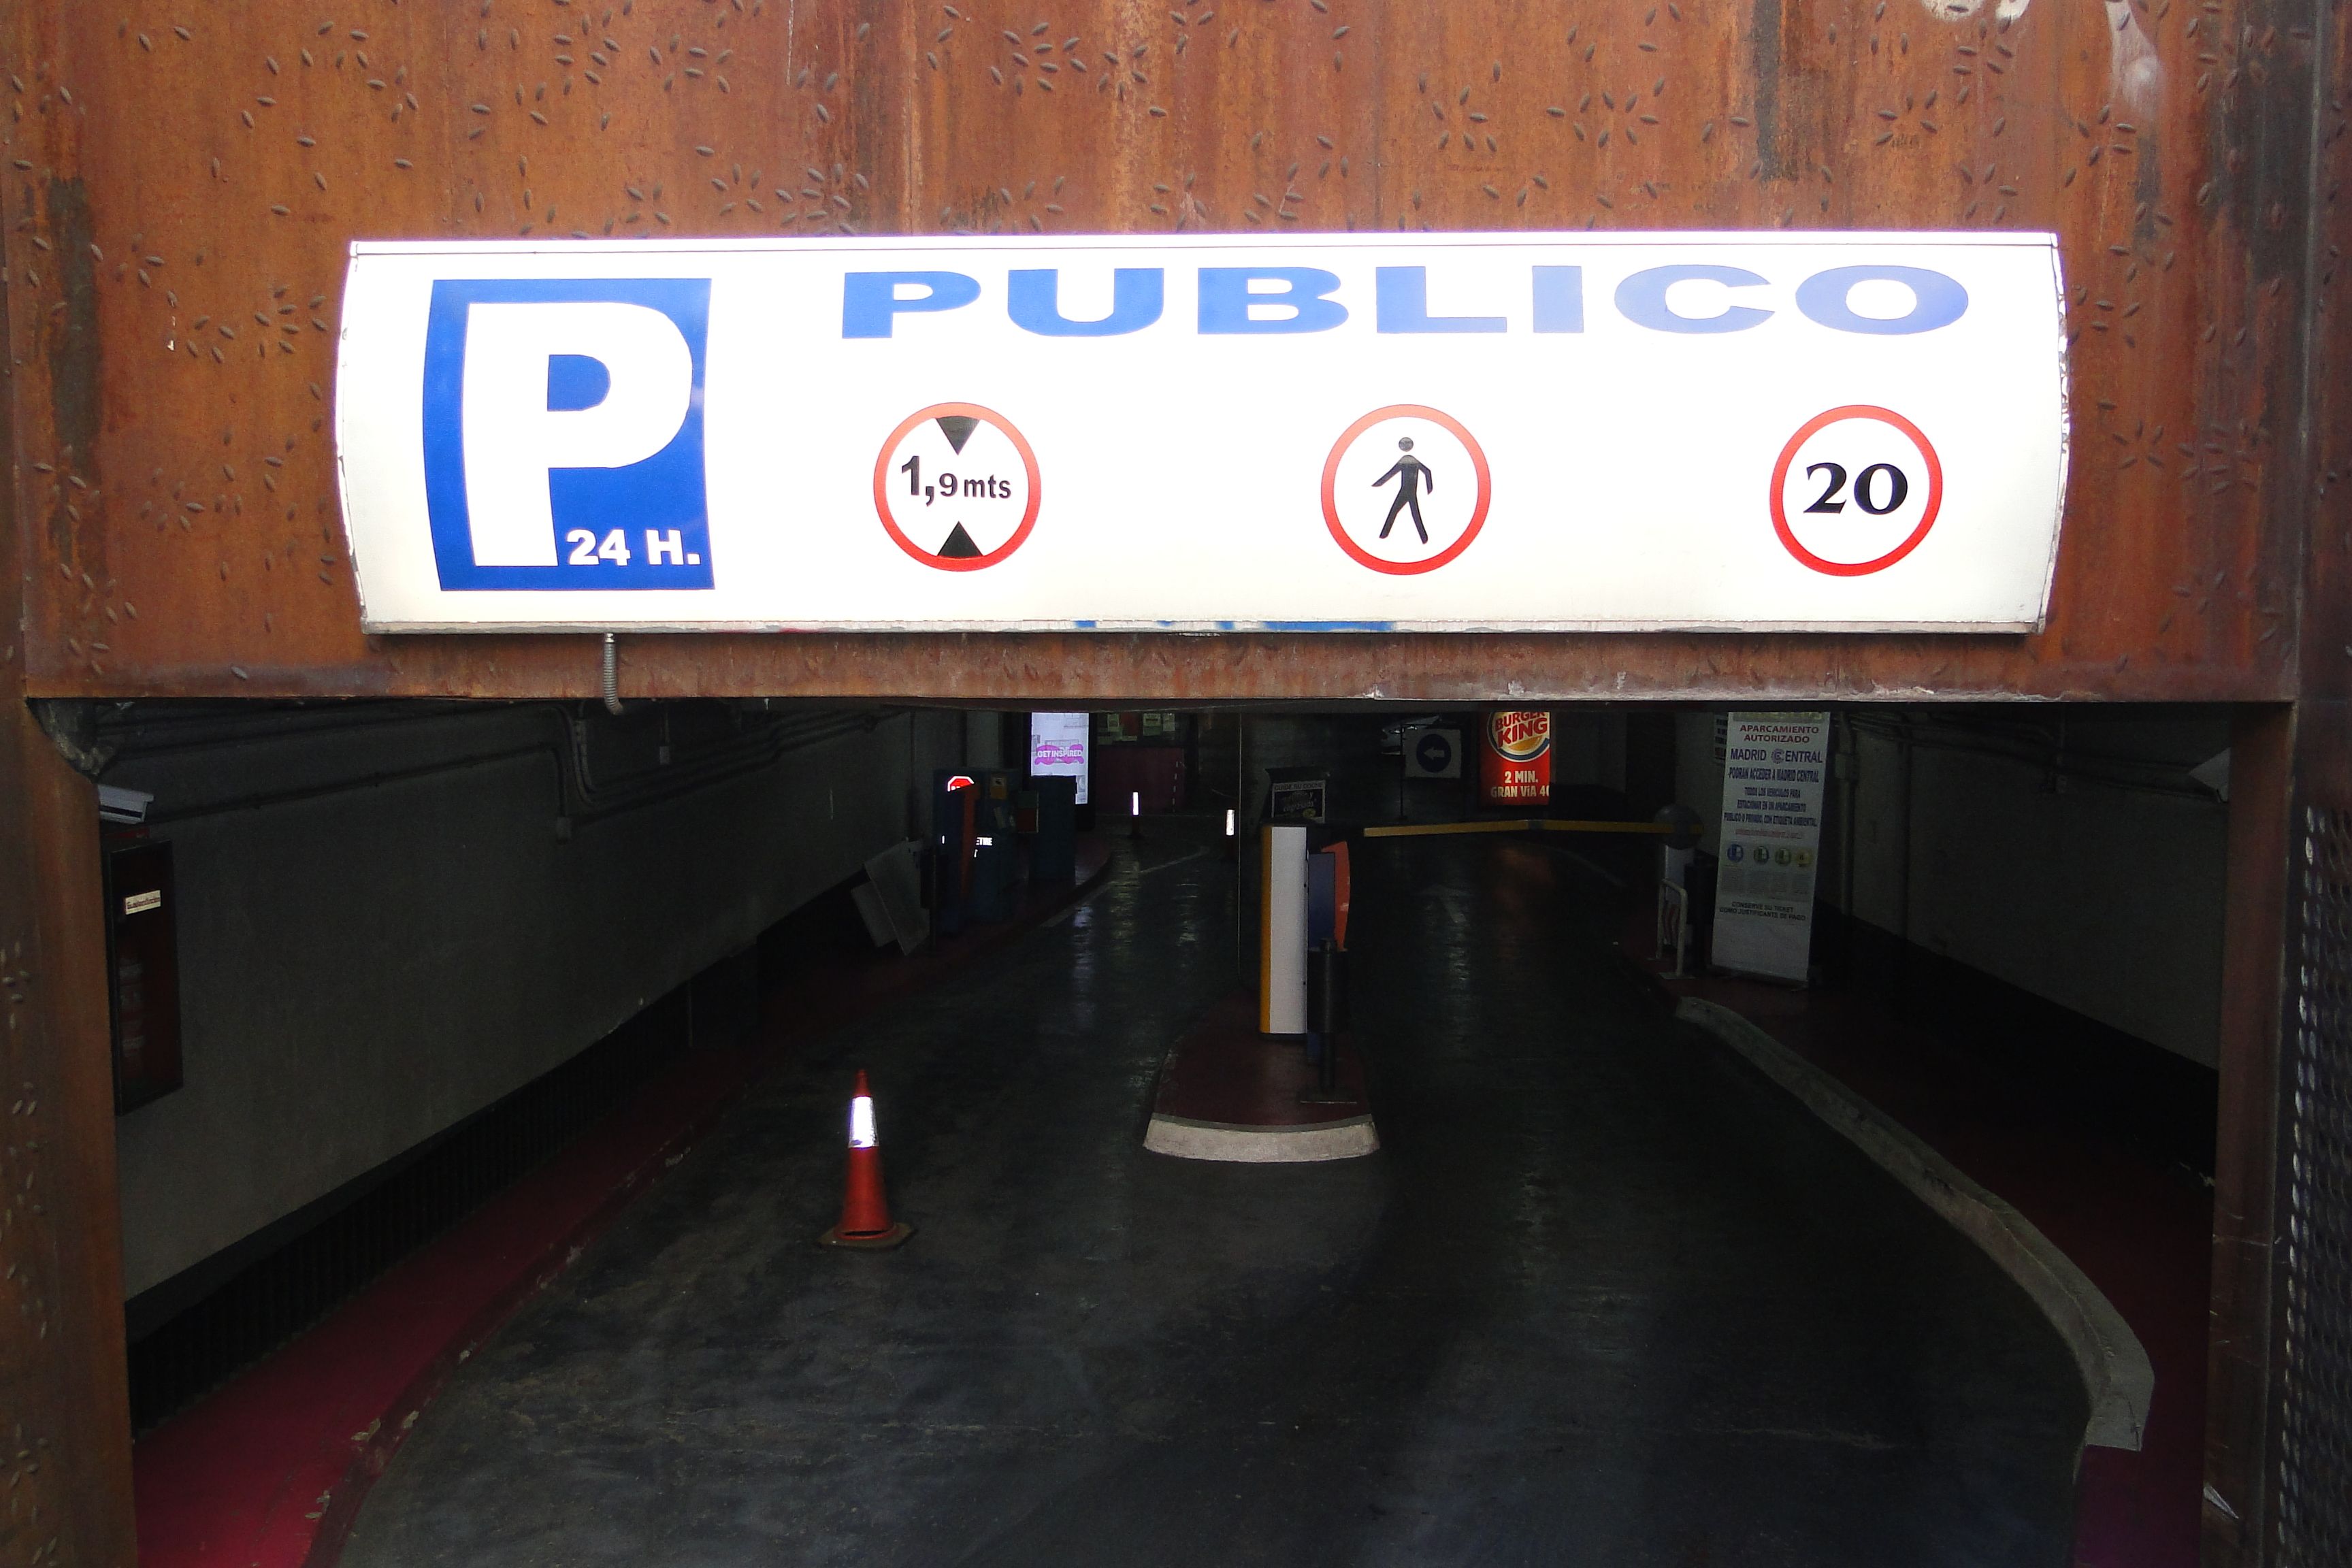 Parking Público Tudescos - Luna en Madrid Central